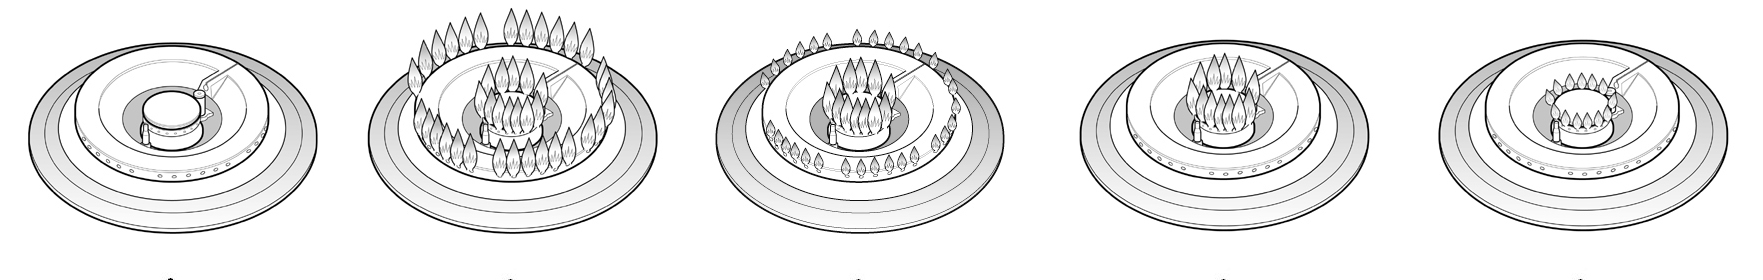 Descrizione prodotto e simbologia 1. Griglie amovibili 2. Bruciatori wok a due corone indipendenti 3. Zone cottura ad induzione diametro 145 mm 4. Manopola comando bruciatore sinistra 5.